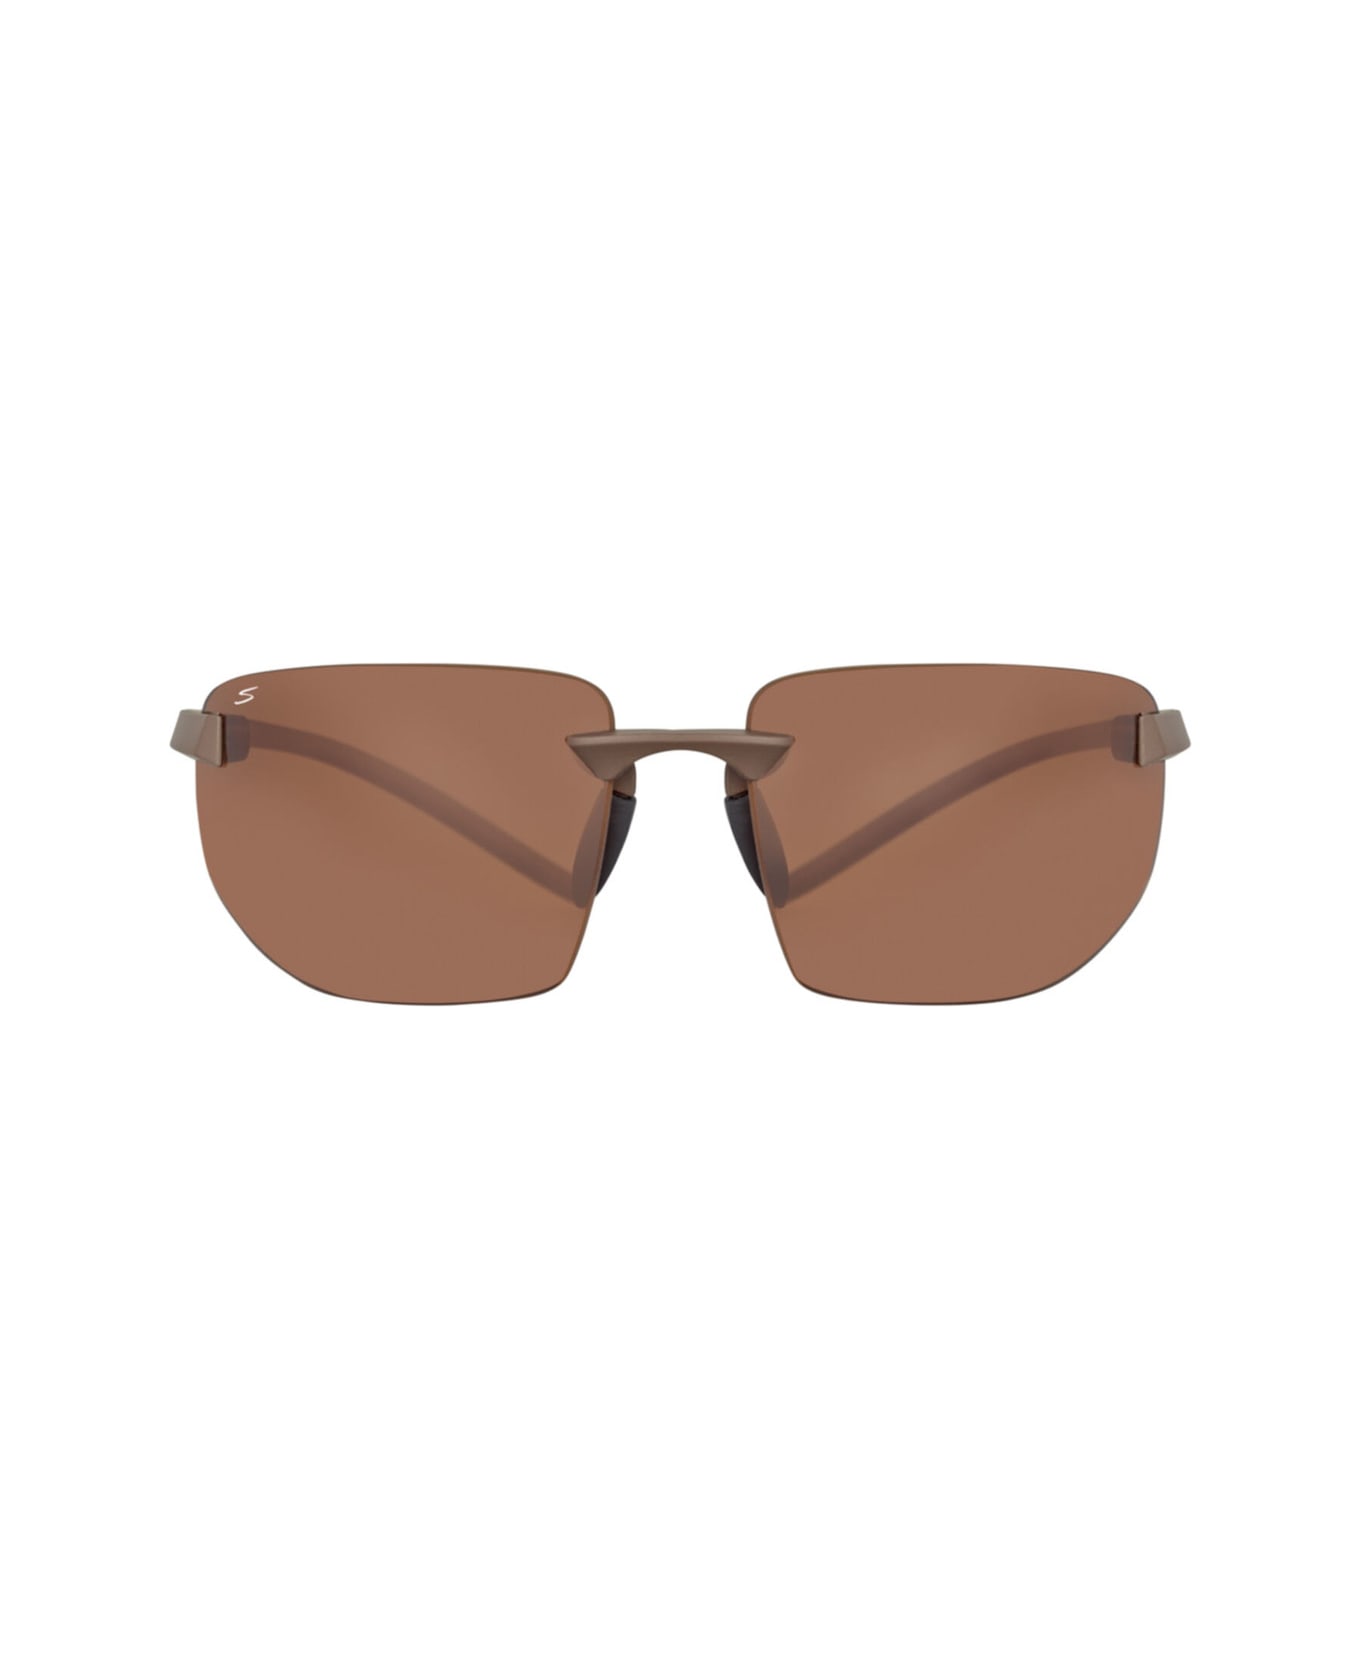 Serengeti Eyewear 553004 Sunglasses - Shiny Dark brown サングラス